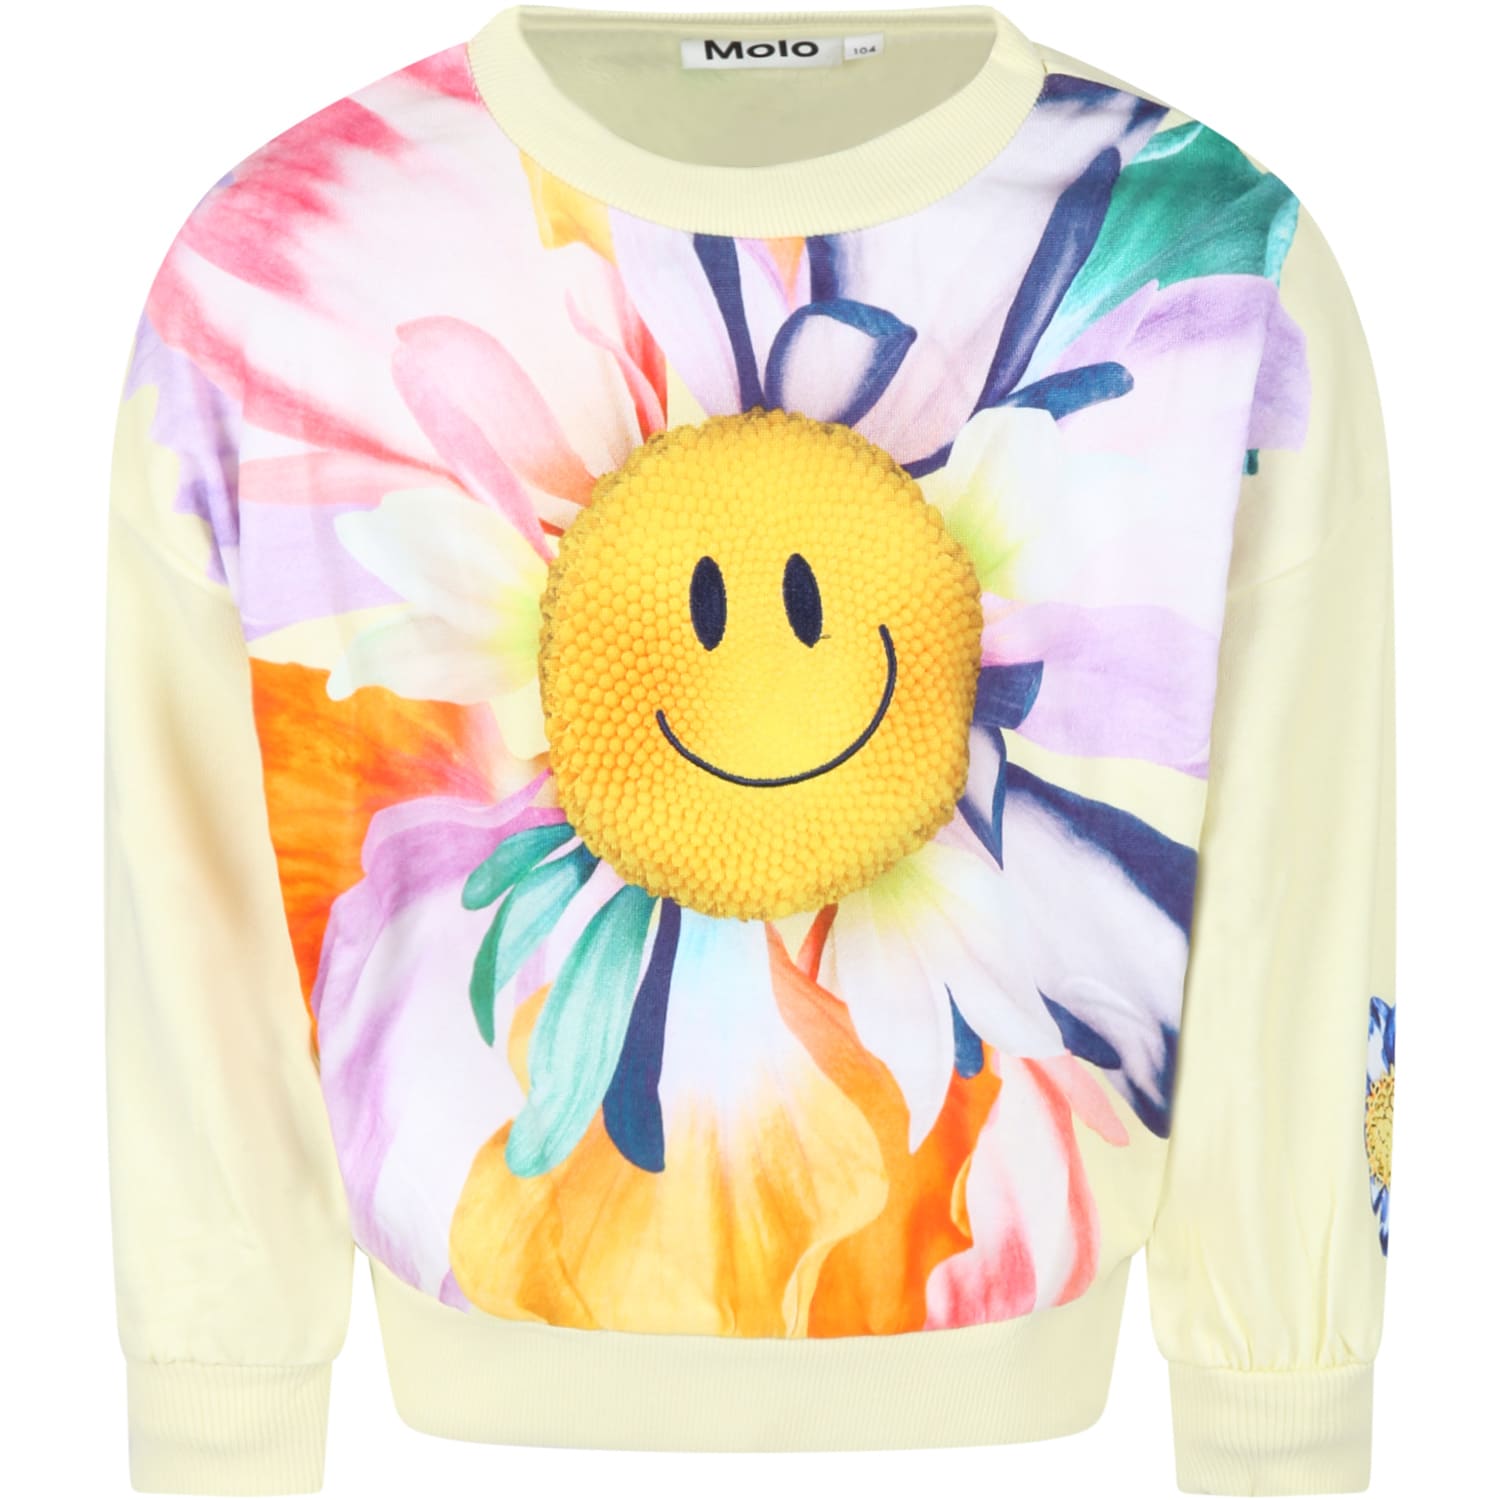 Molo Yellow Sweatshirt For Girl With Flower